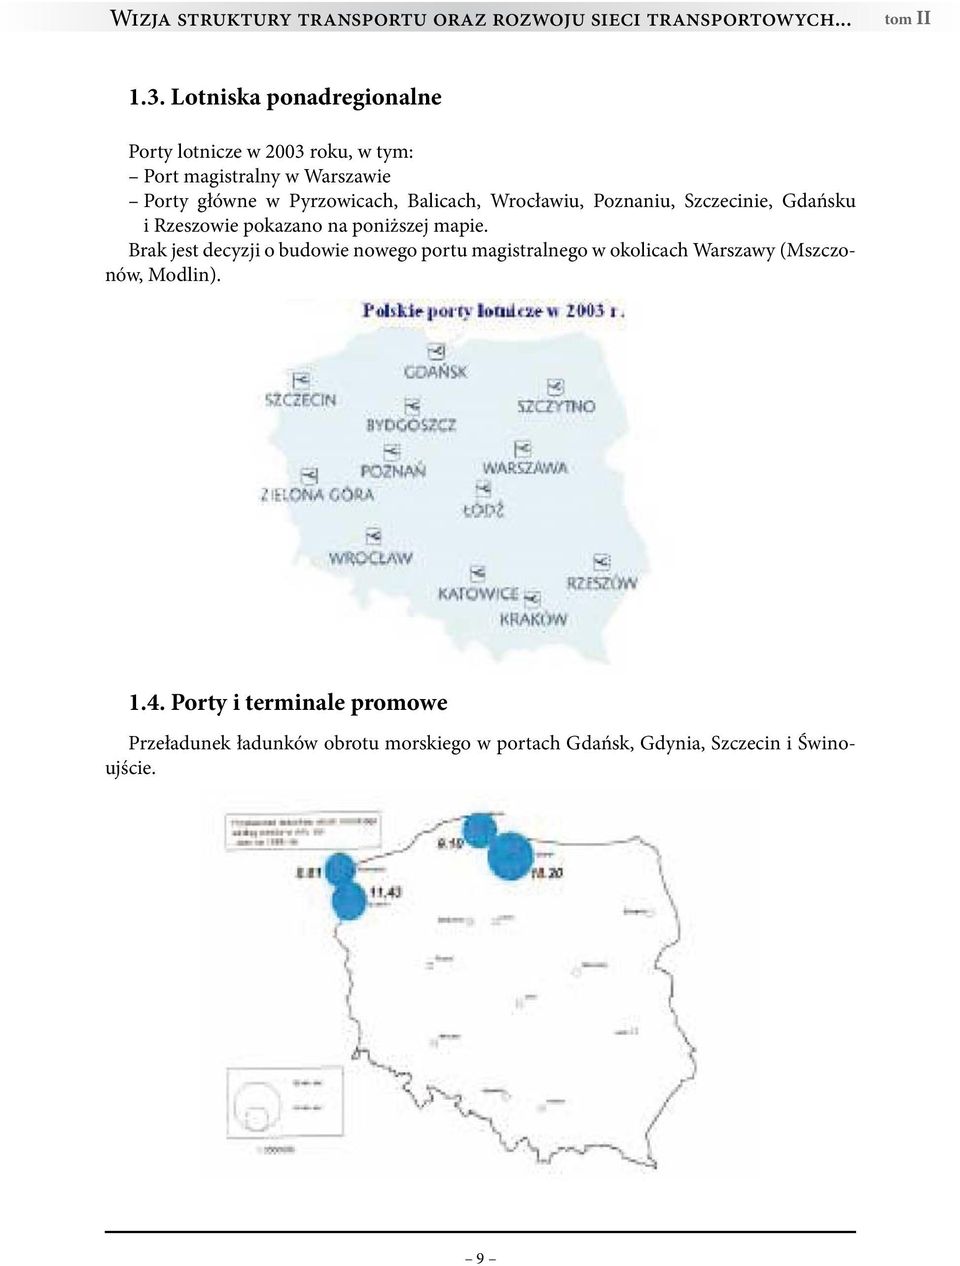 Balicach, Wrocławiu, Poznaniu, Szczecinie, Gdańsku i Rzeszowie pokazano na poniższej mapie.